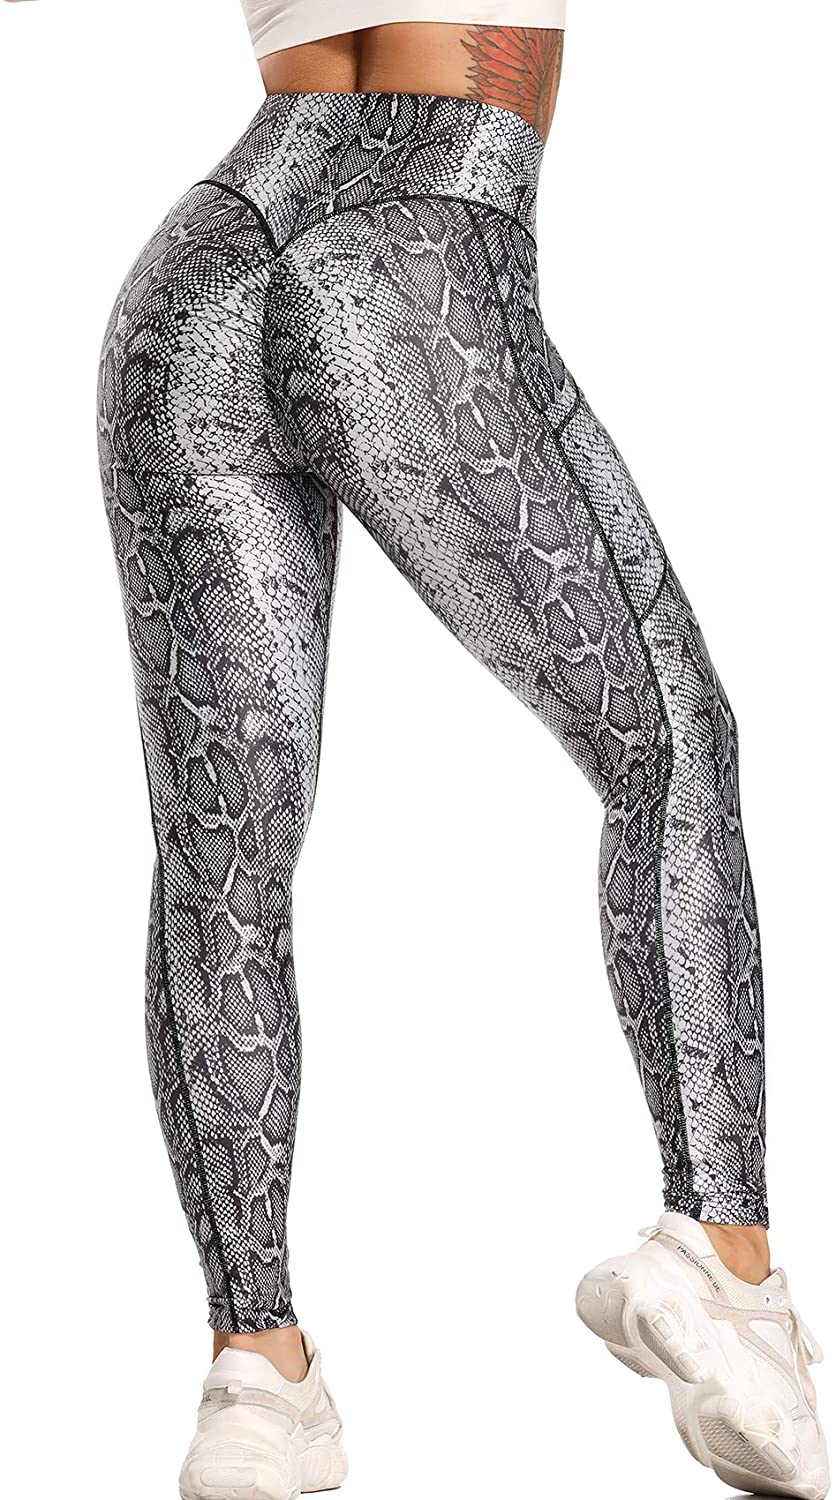 Snakeskin Leggings, High Waisted Yoga Pants for Women, Grey Snake